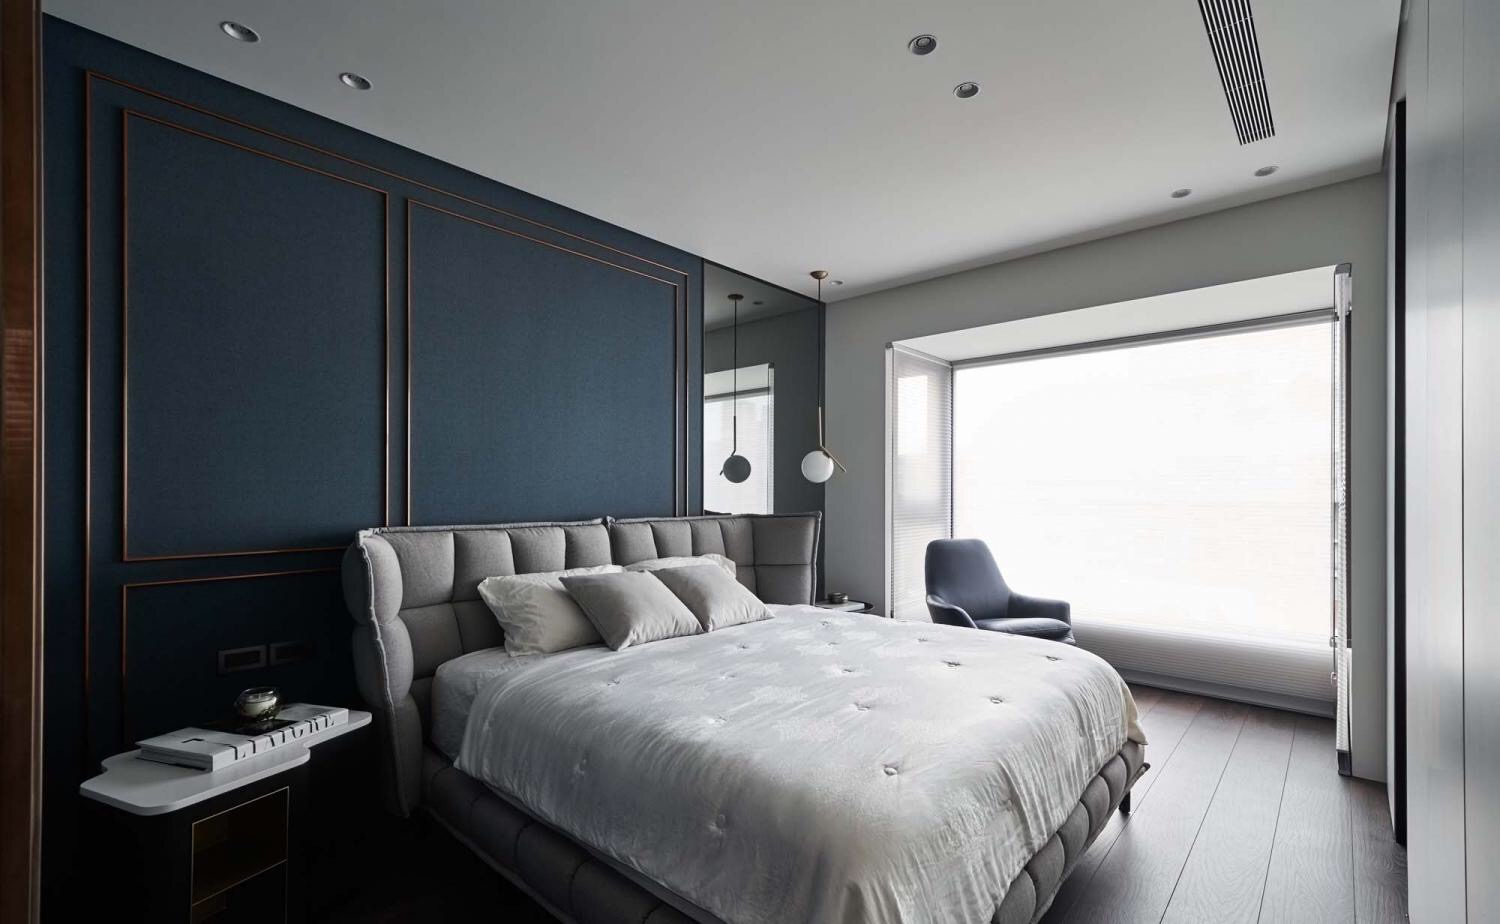 蓝色背景墙增加了空间的体量感，灰色床头搭配垂吊灯具，轻松俘获人心。